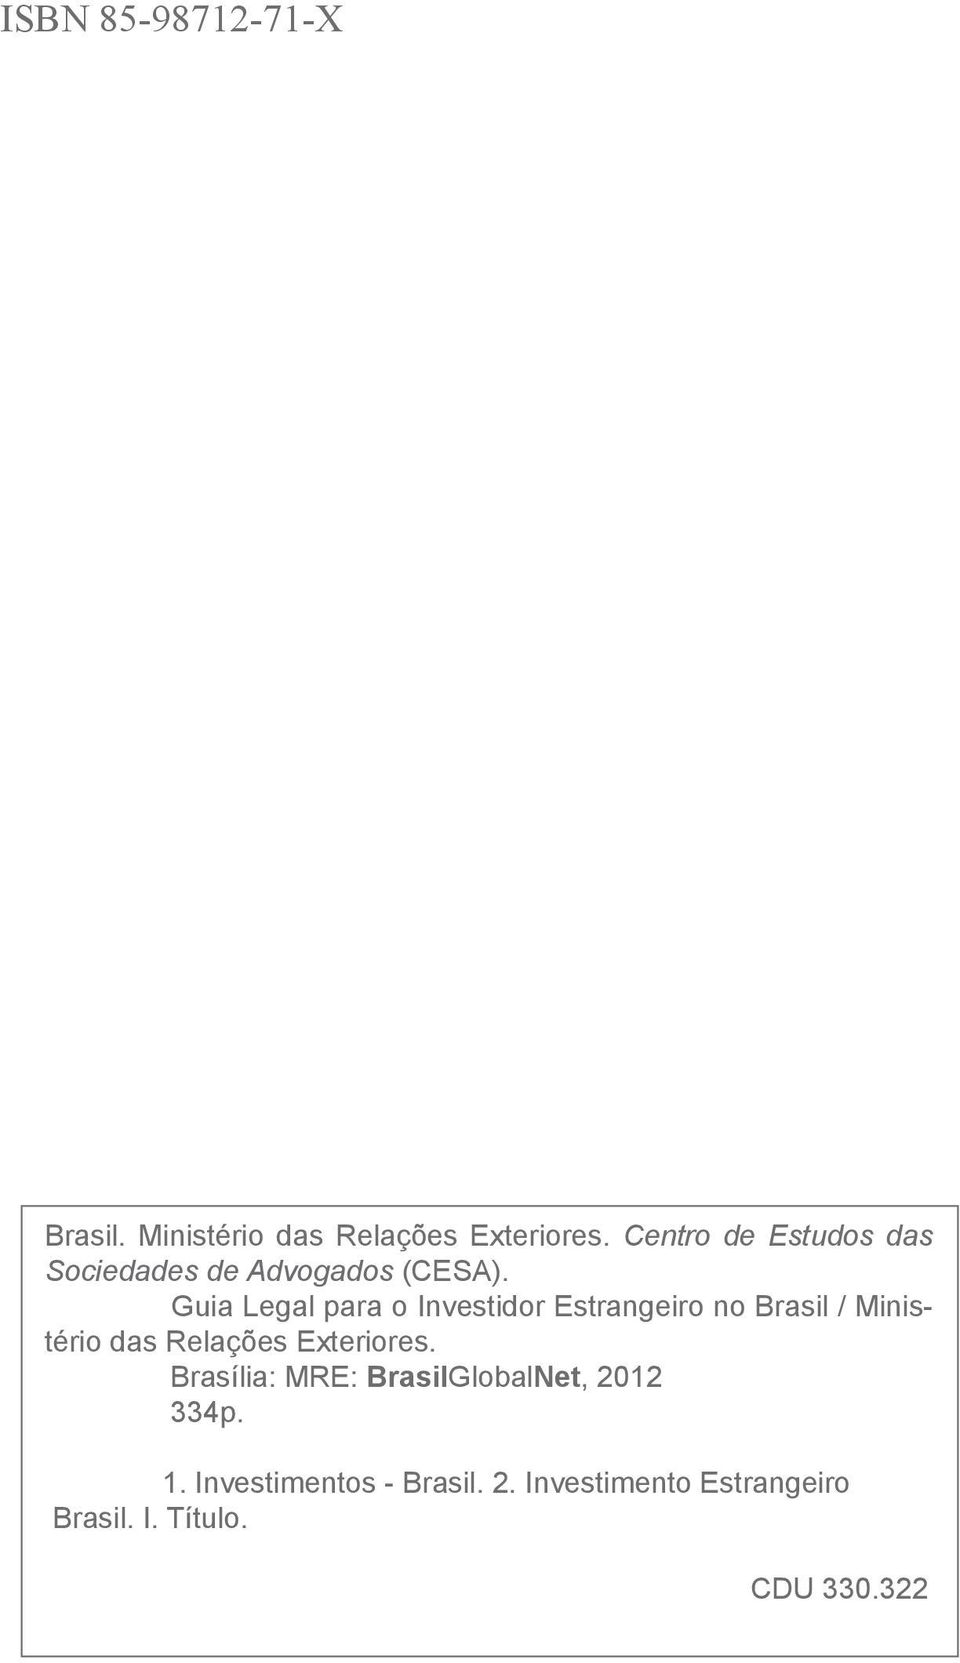 Guia Legal para o Investidor Estrangeiro no Brasil / Ministério das Relações